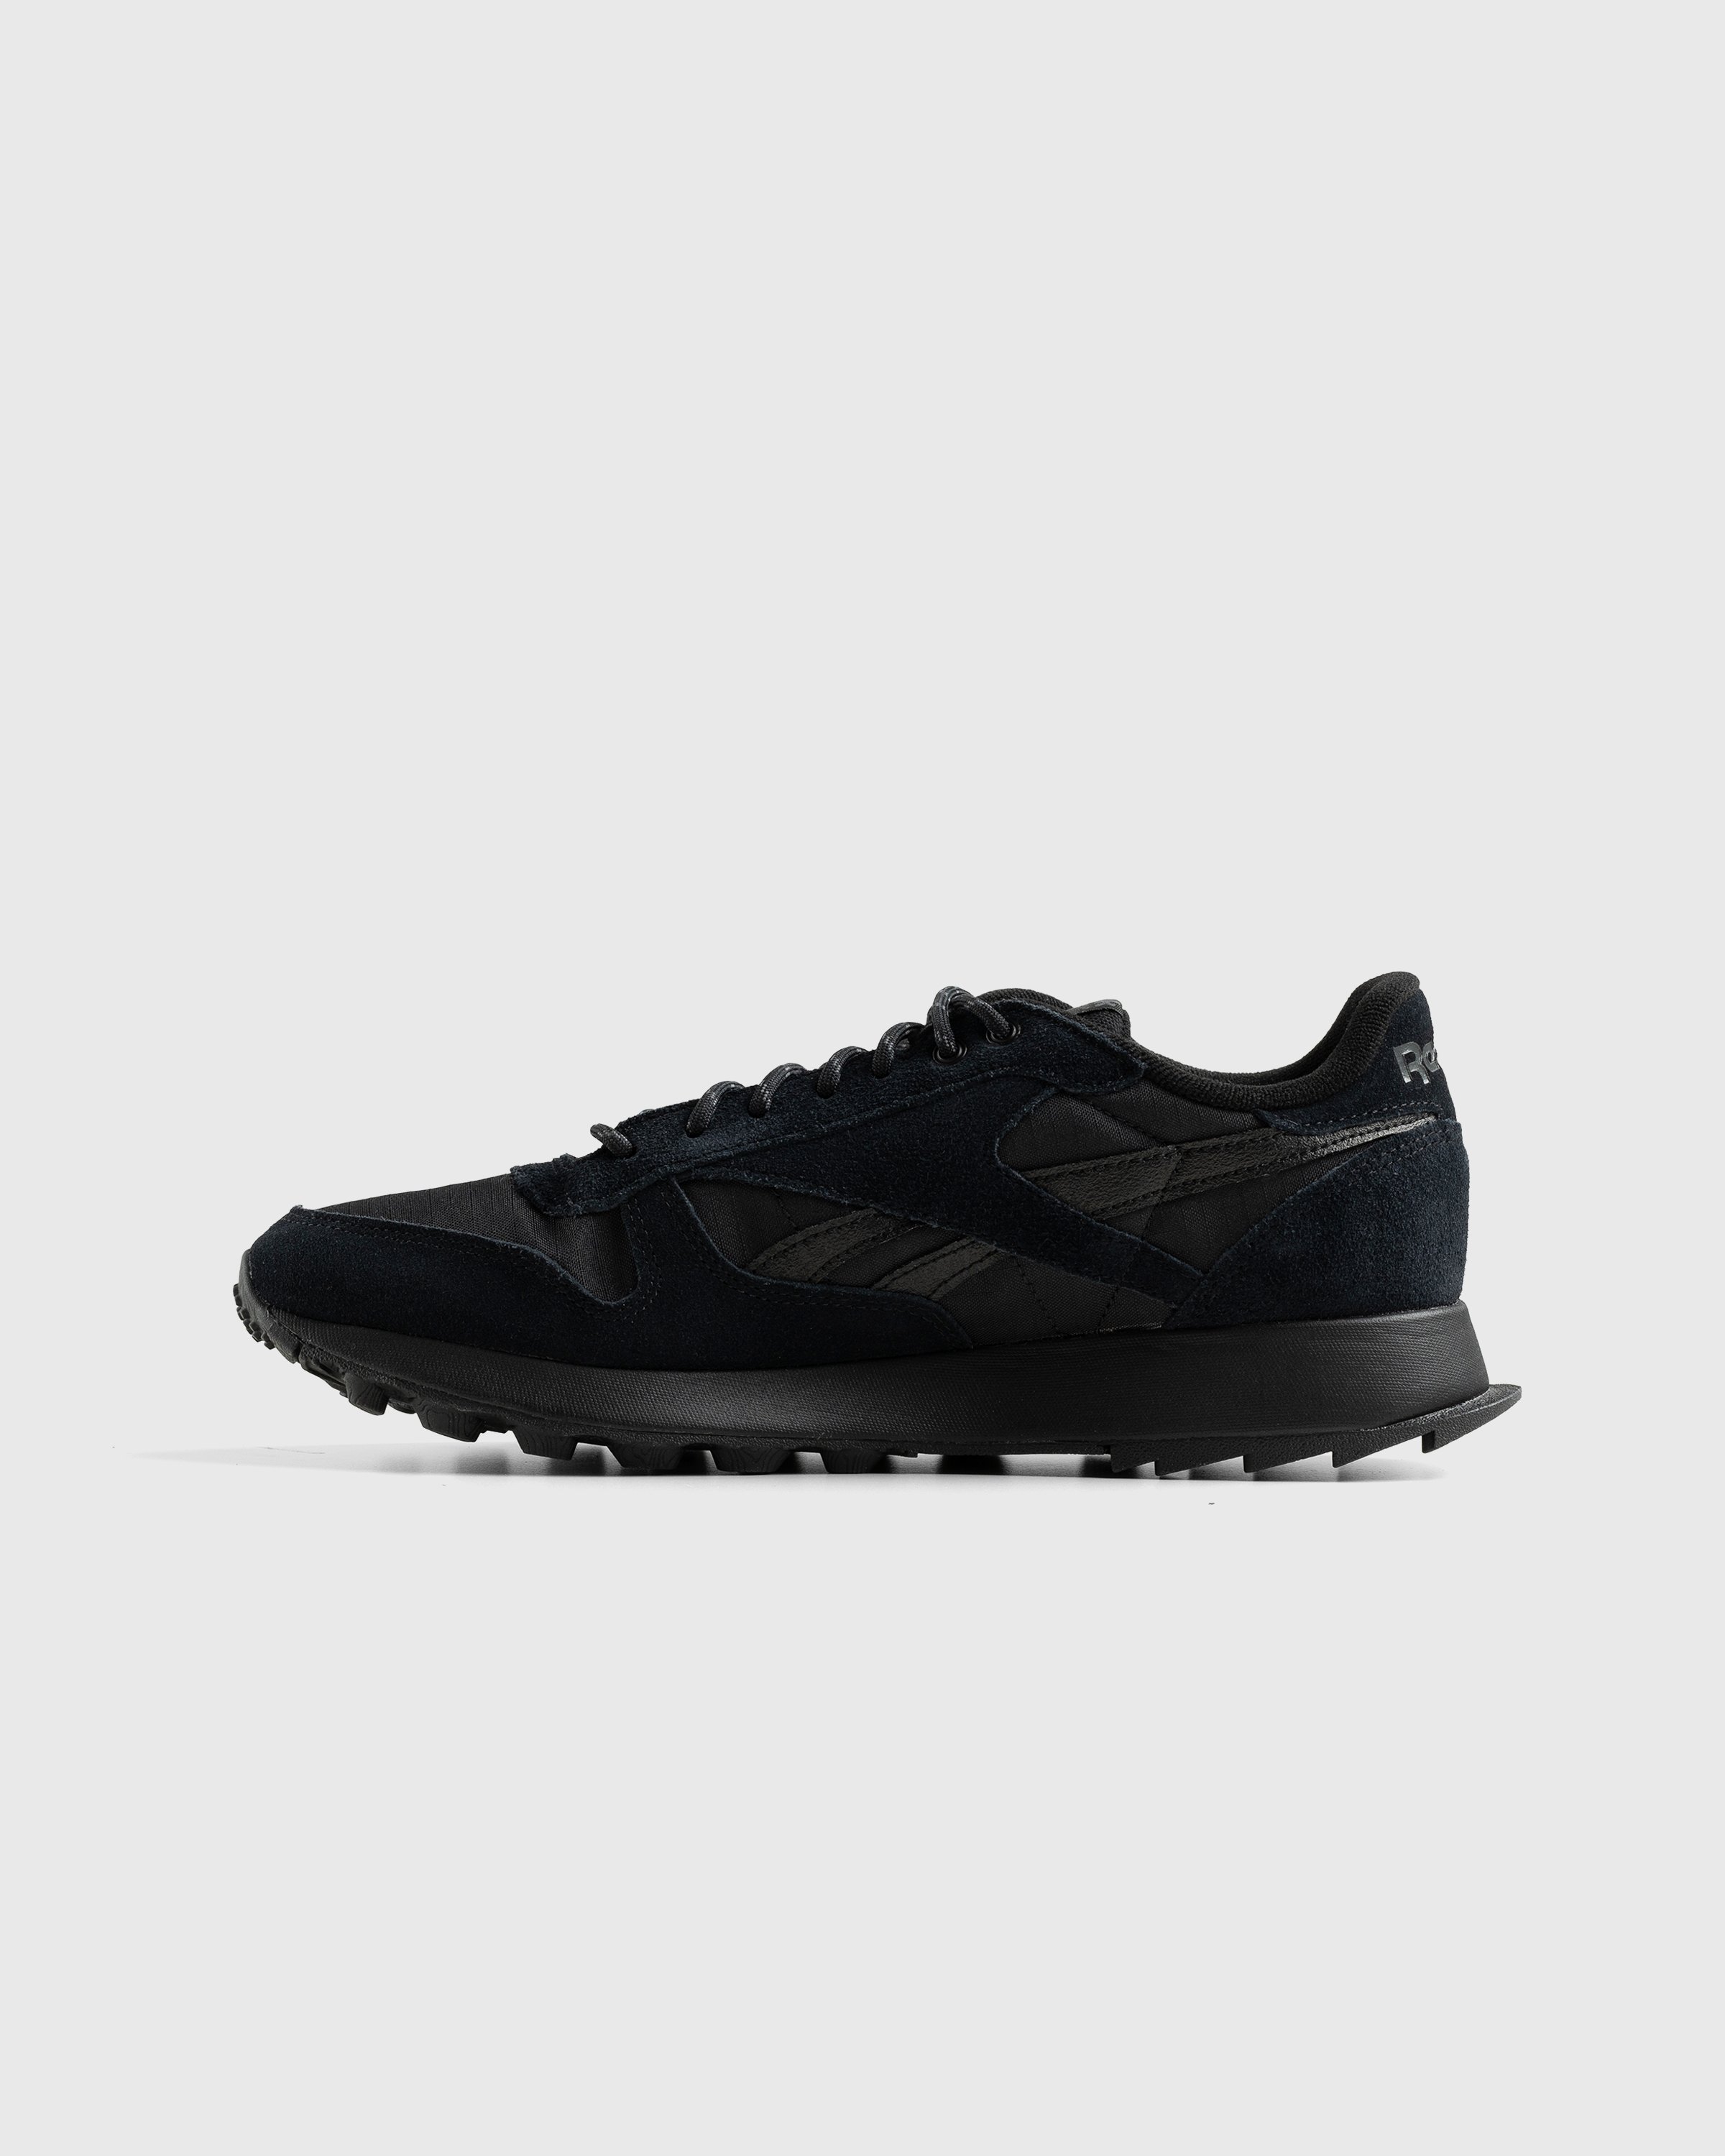 Reebok - LX2200 Black - Footwear - Black - Image 2